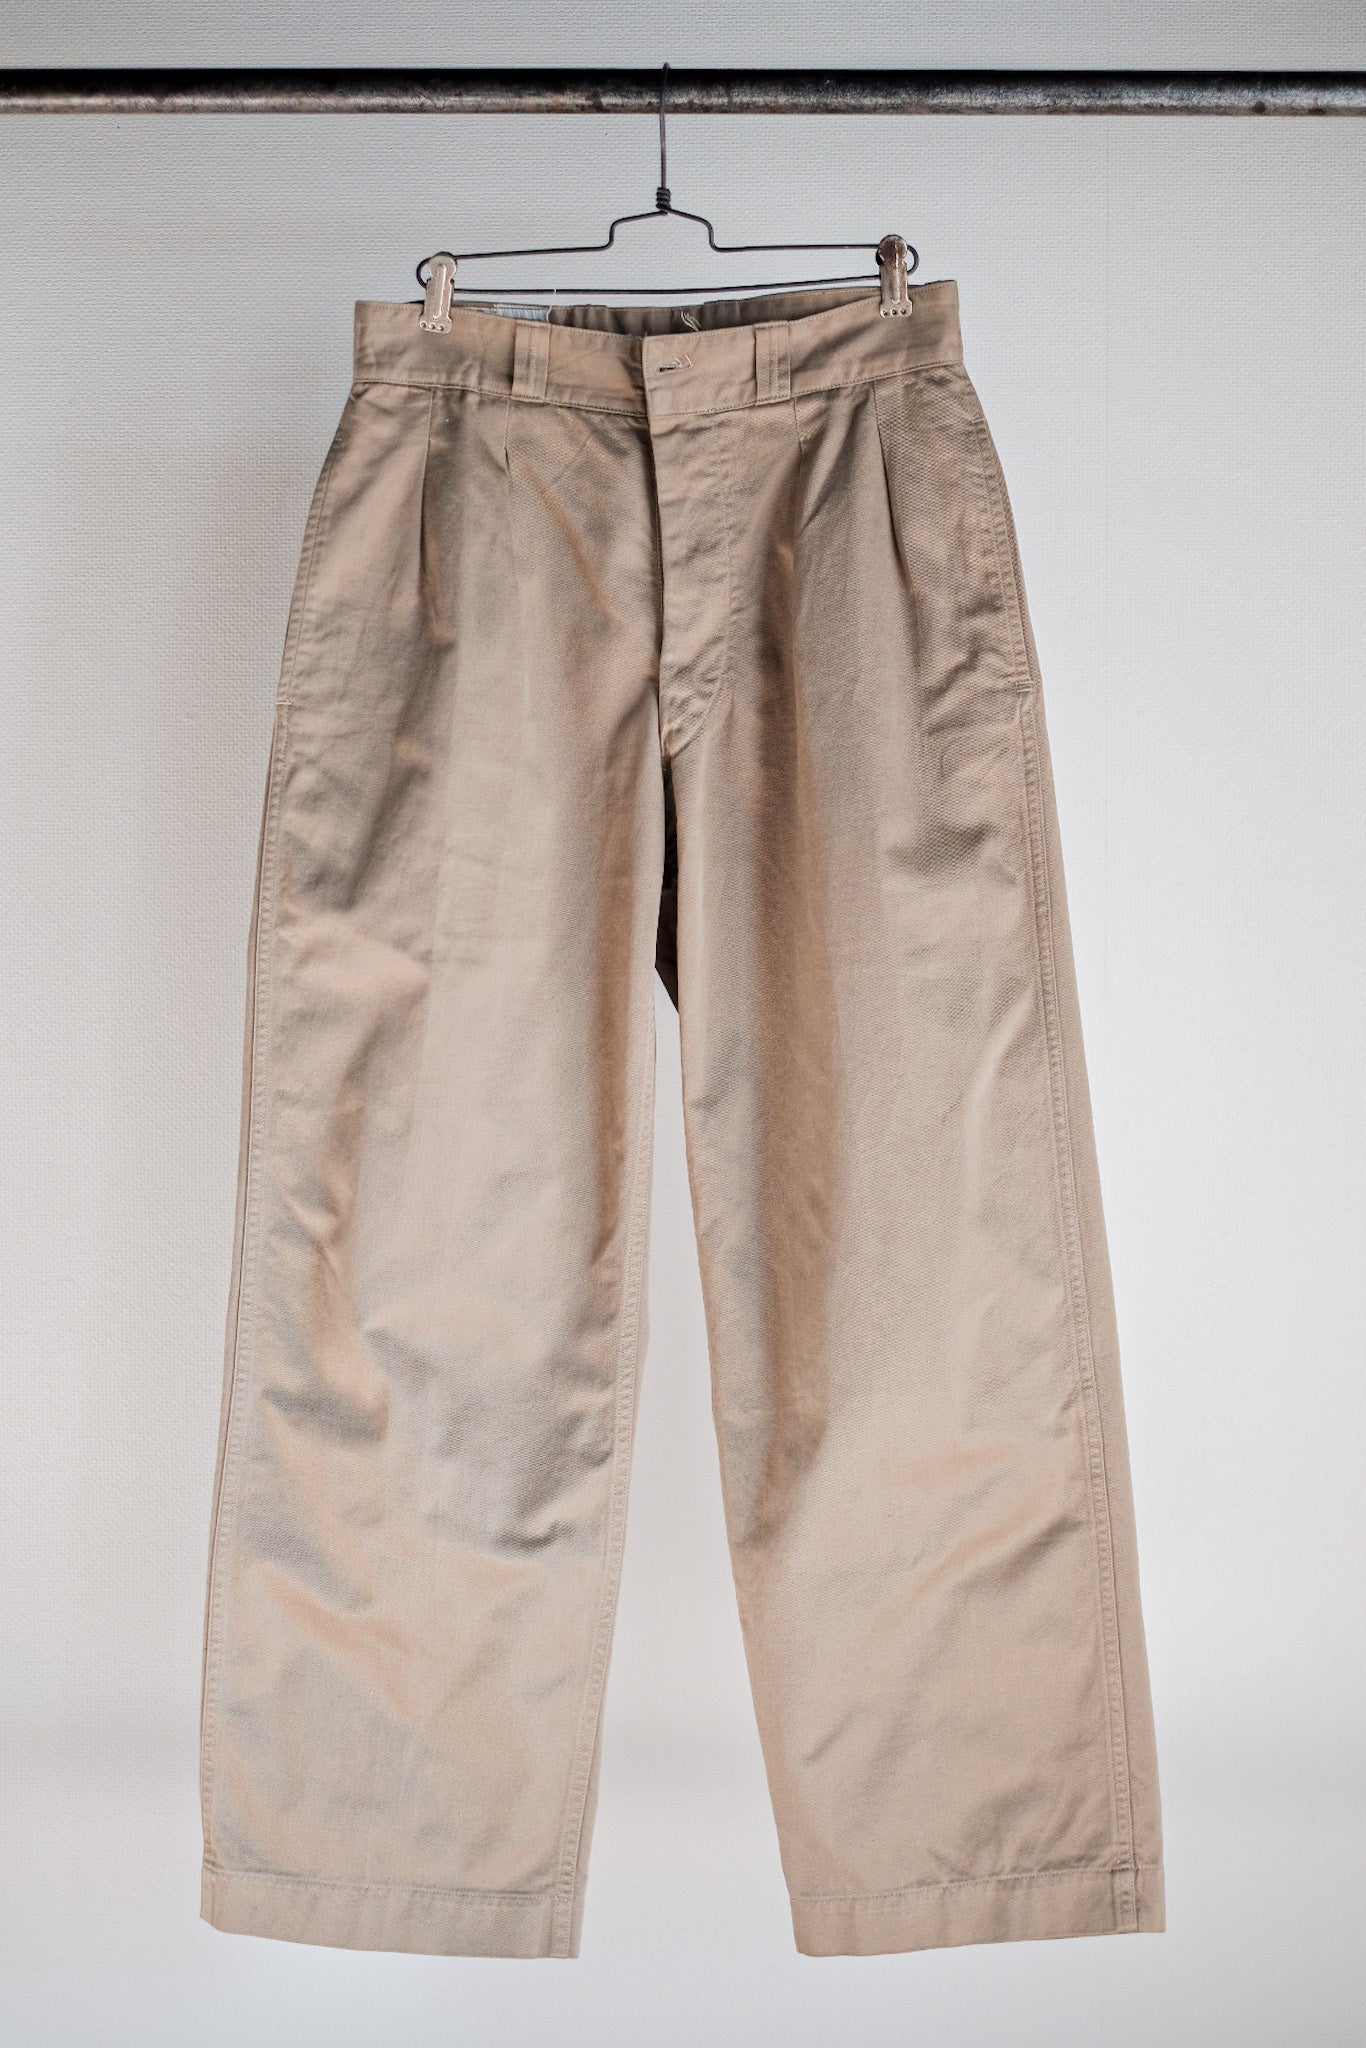 [~ 60's] Taille des pantalons chino de l'armée française M52.21